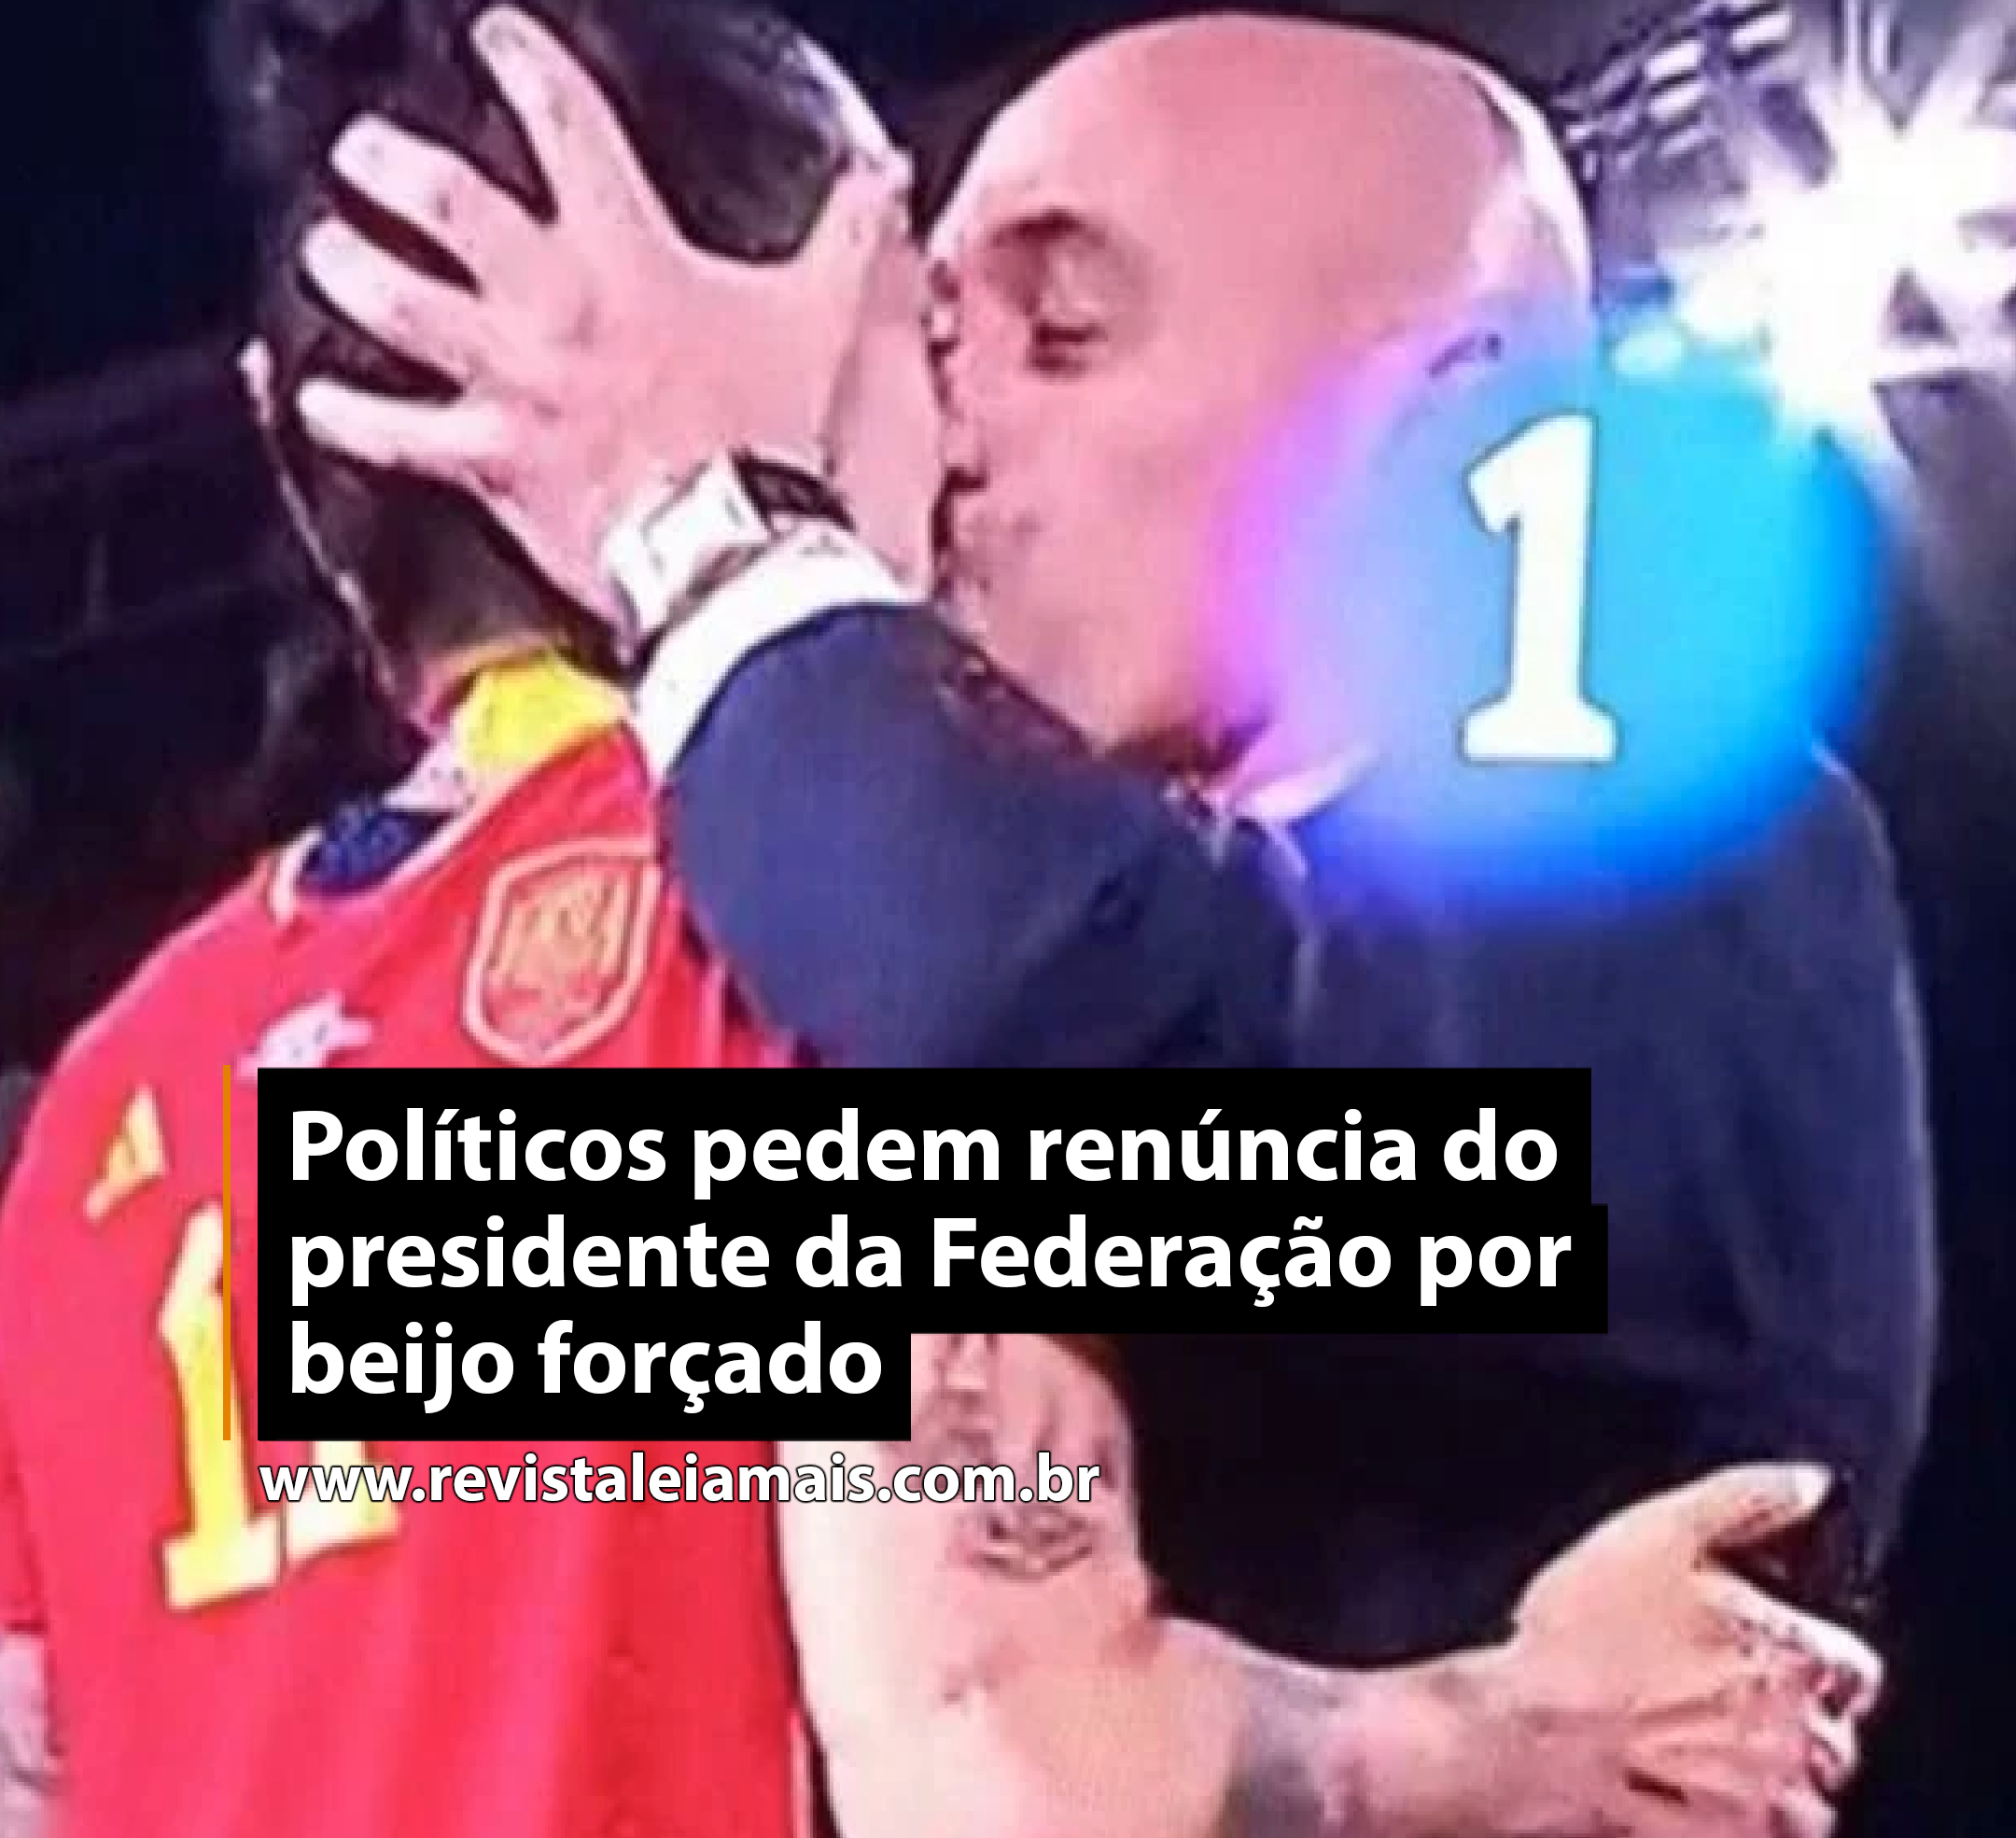 Políticos pedem renúncia do presidente da Federação por beijo forçado